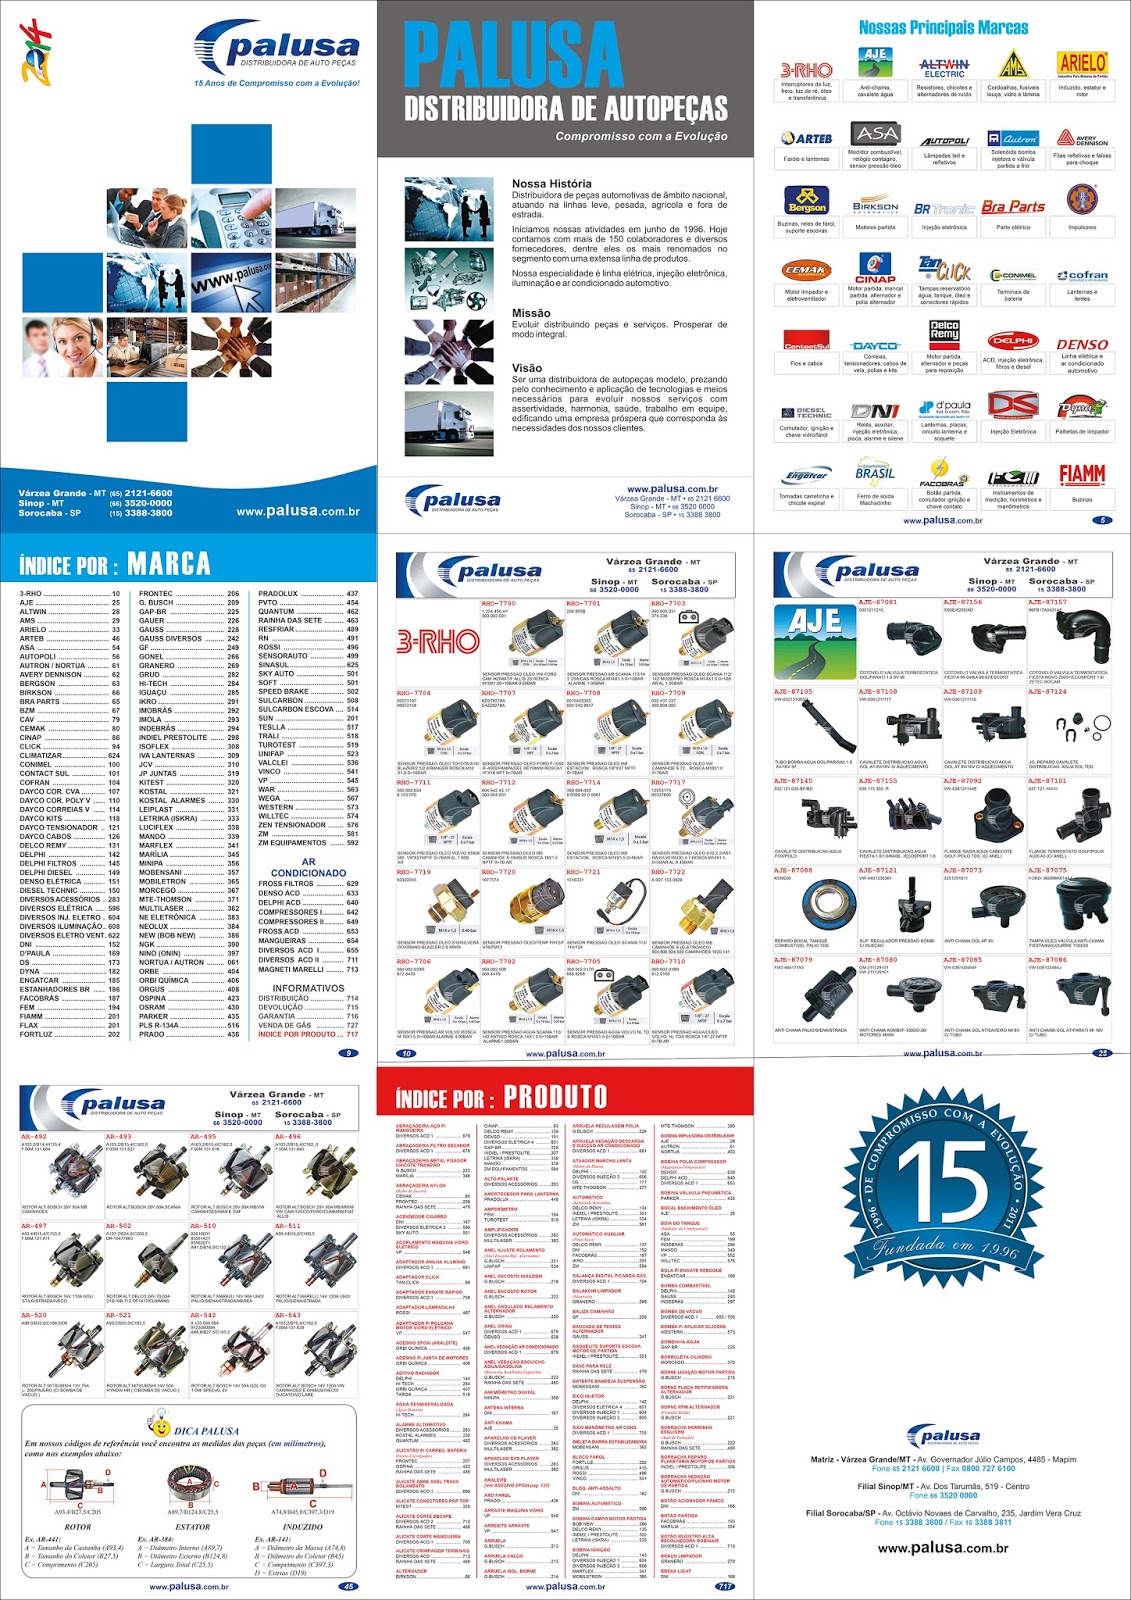 Palusa - Distribuidora de Auto Peças - Apresentação do Catálogo Palusa 2014  na filial de Sinop junto com os produtos da Unipoint.